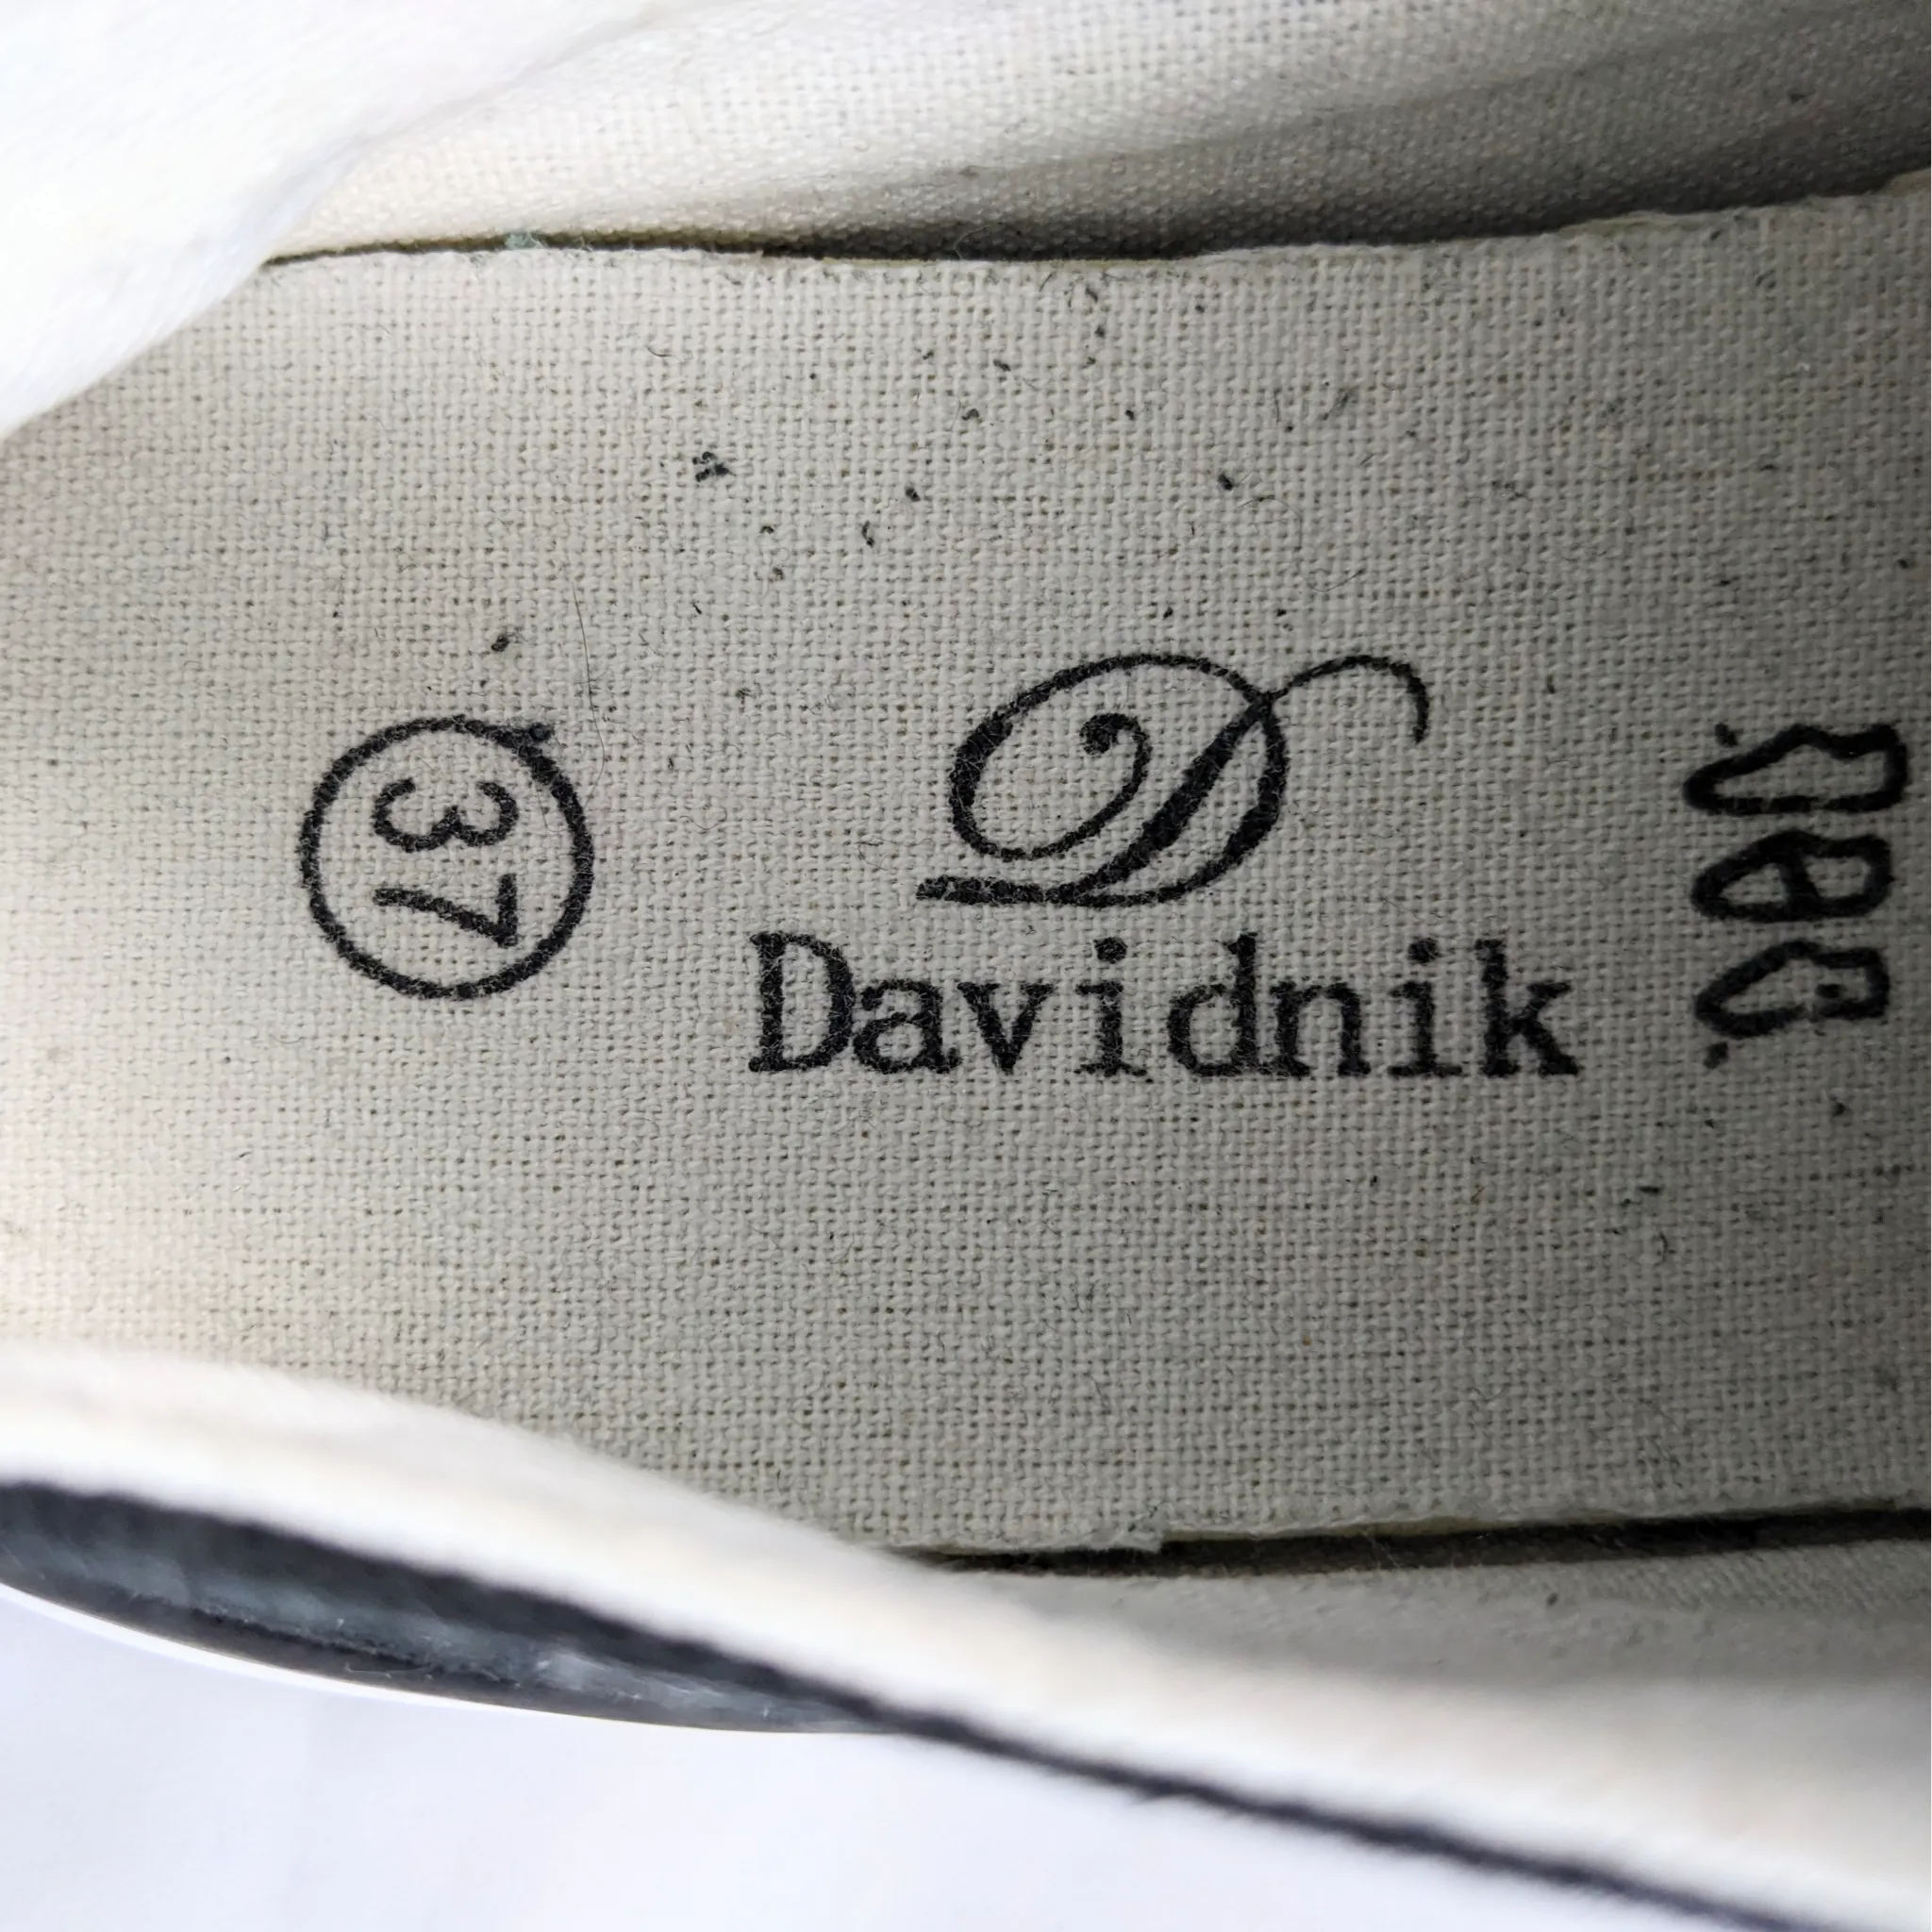 Davidnik Black Sneakers Premium C